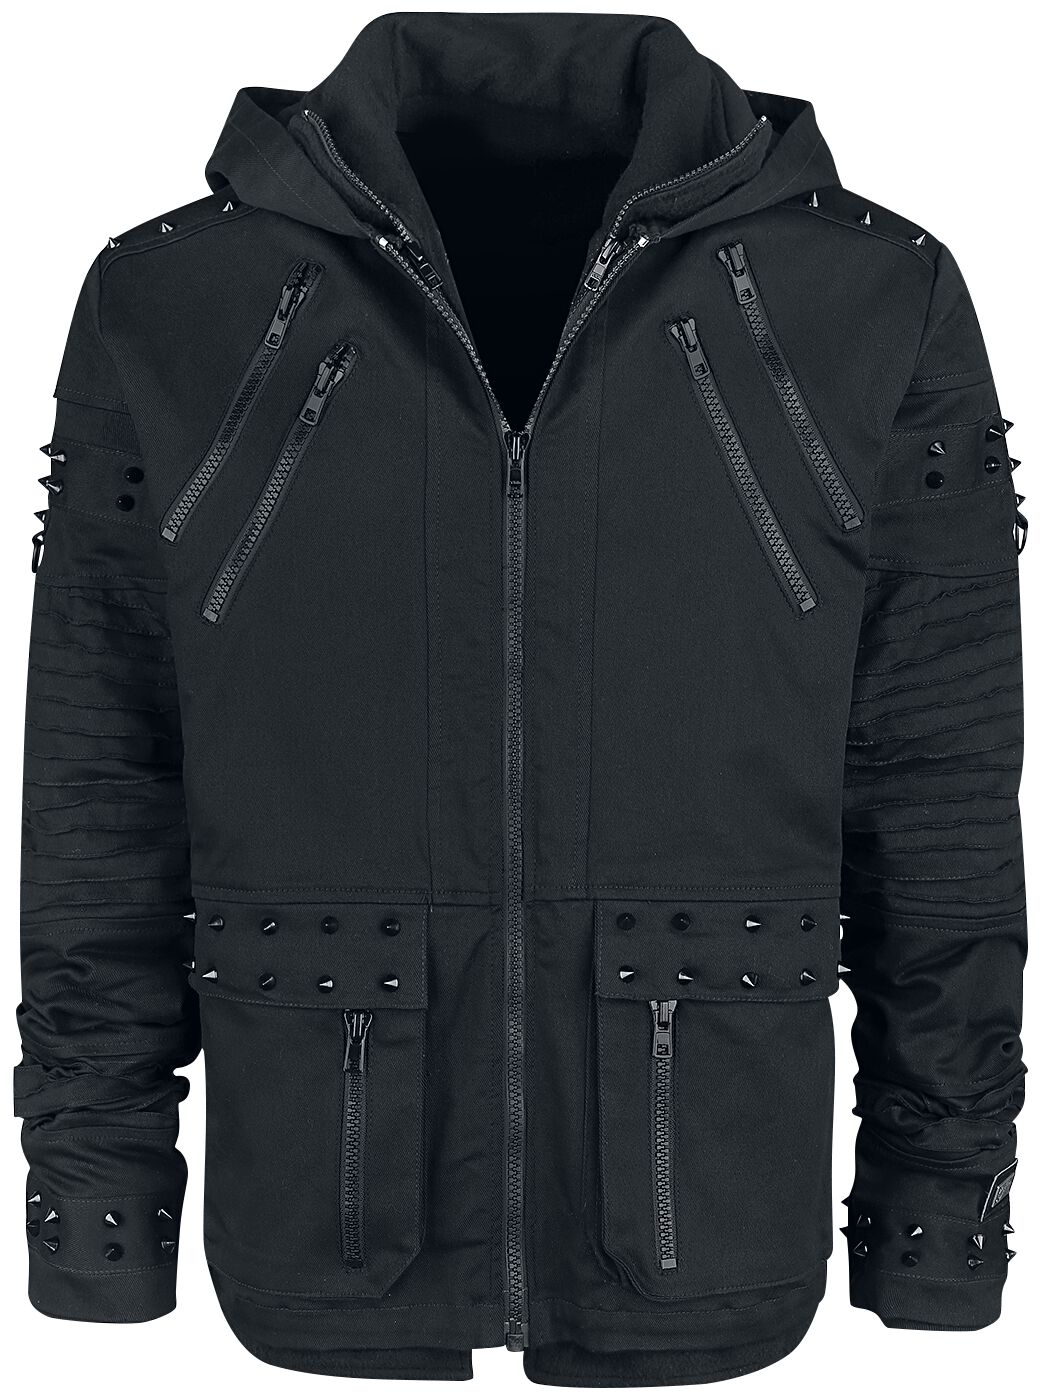 Black Chrome Jacket Winterjacke schwarz von Vixxsin